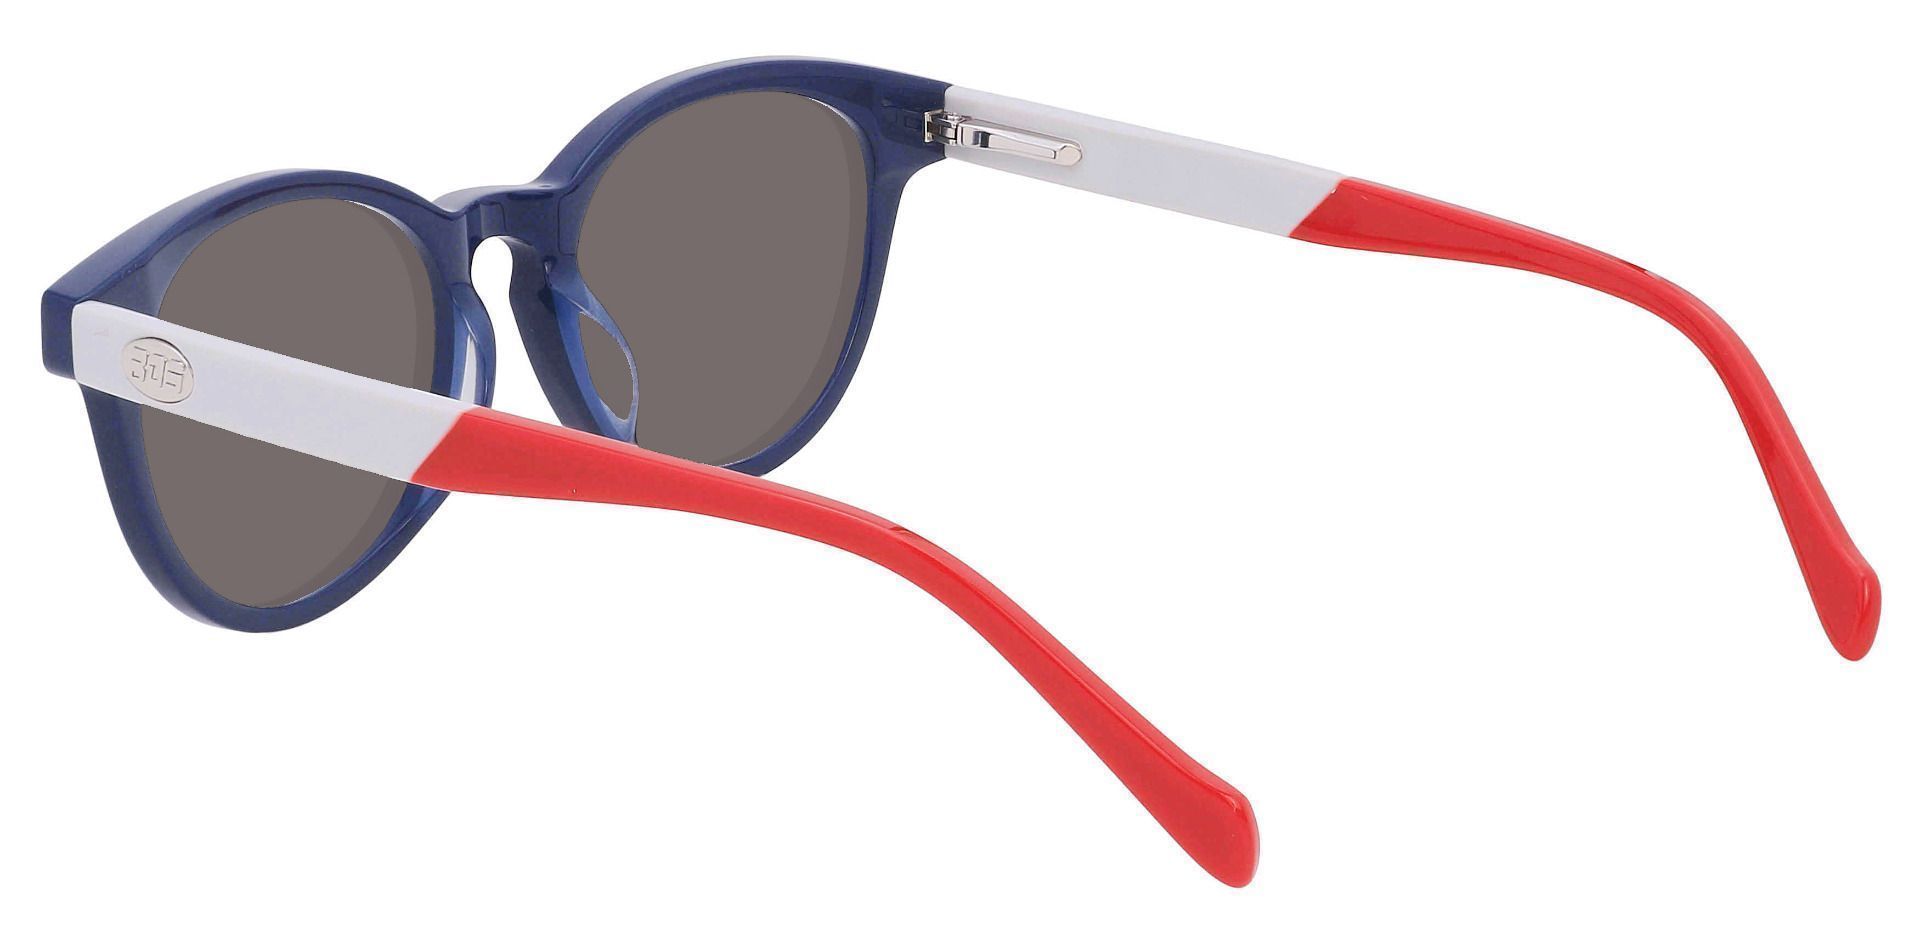 Revere Oval Prescription Sunglasses - Blue Frame With Gray Lenses